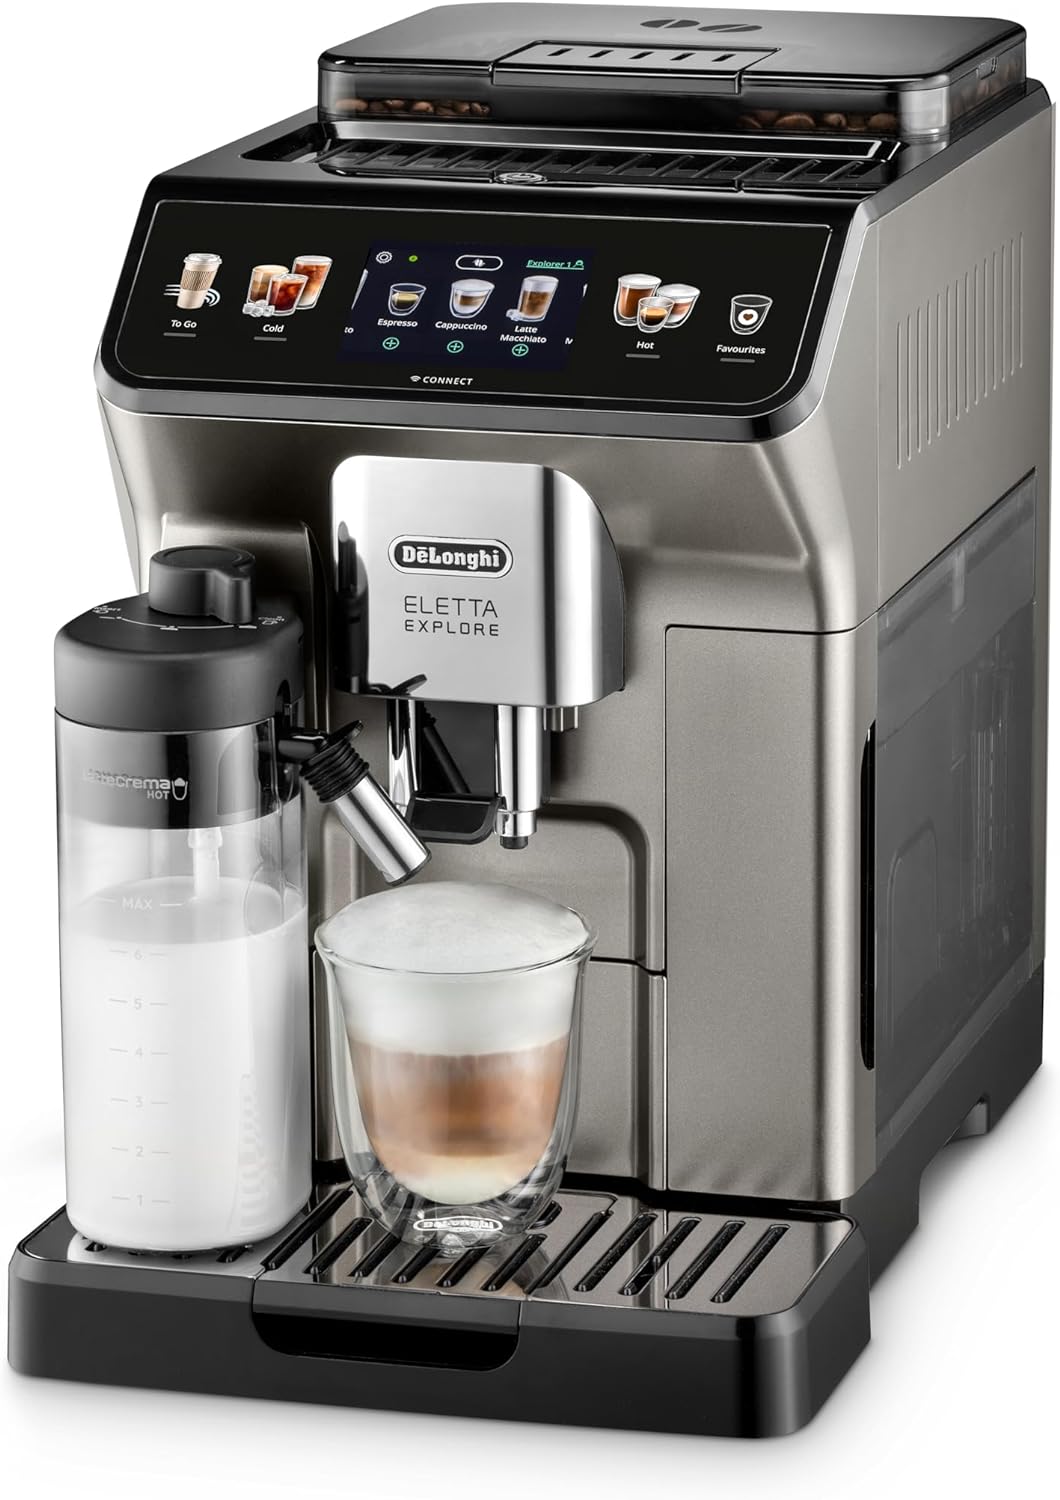 DELONGHI ELETTA EXPLORE COFFEE MACHINE TITANIUM - ECAM450.86.T